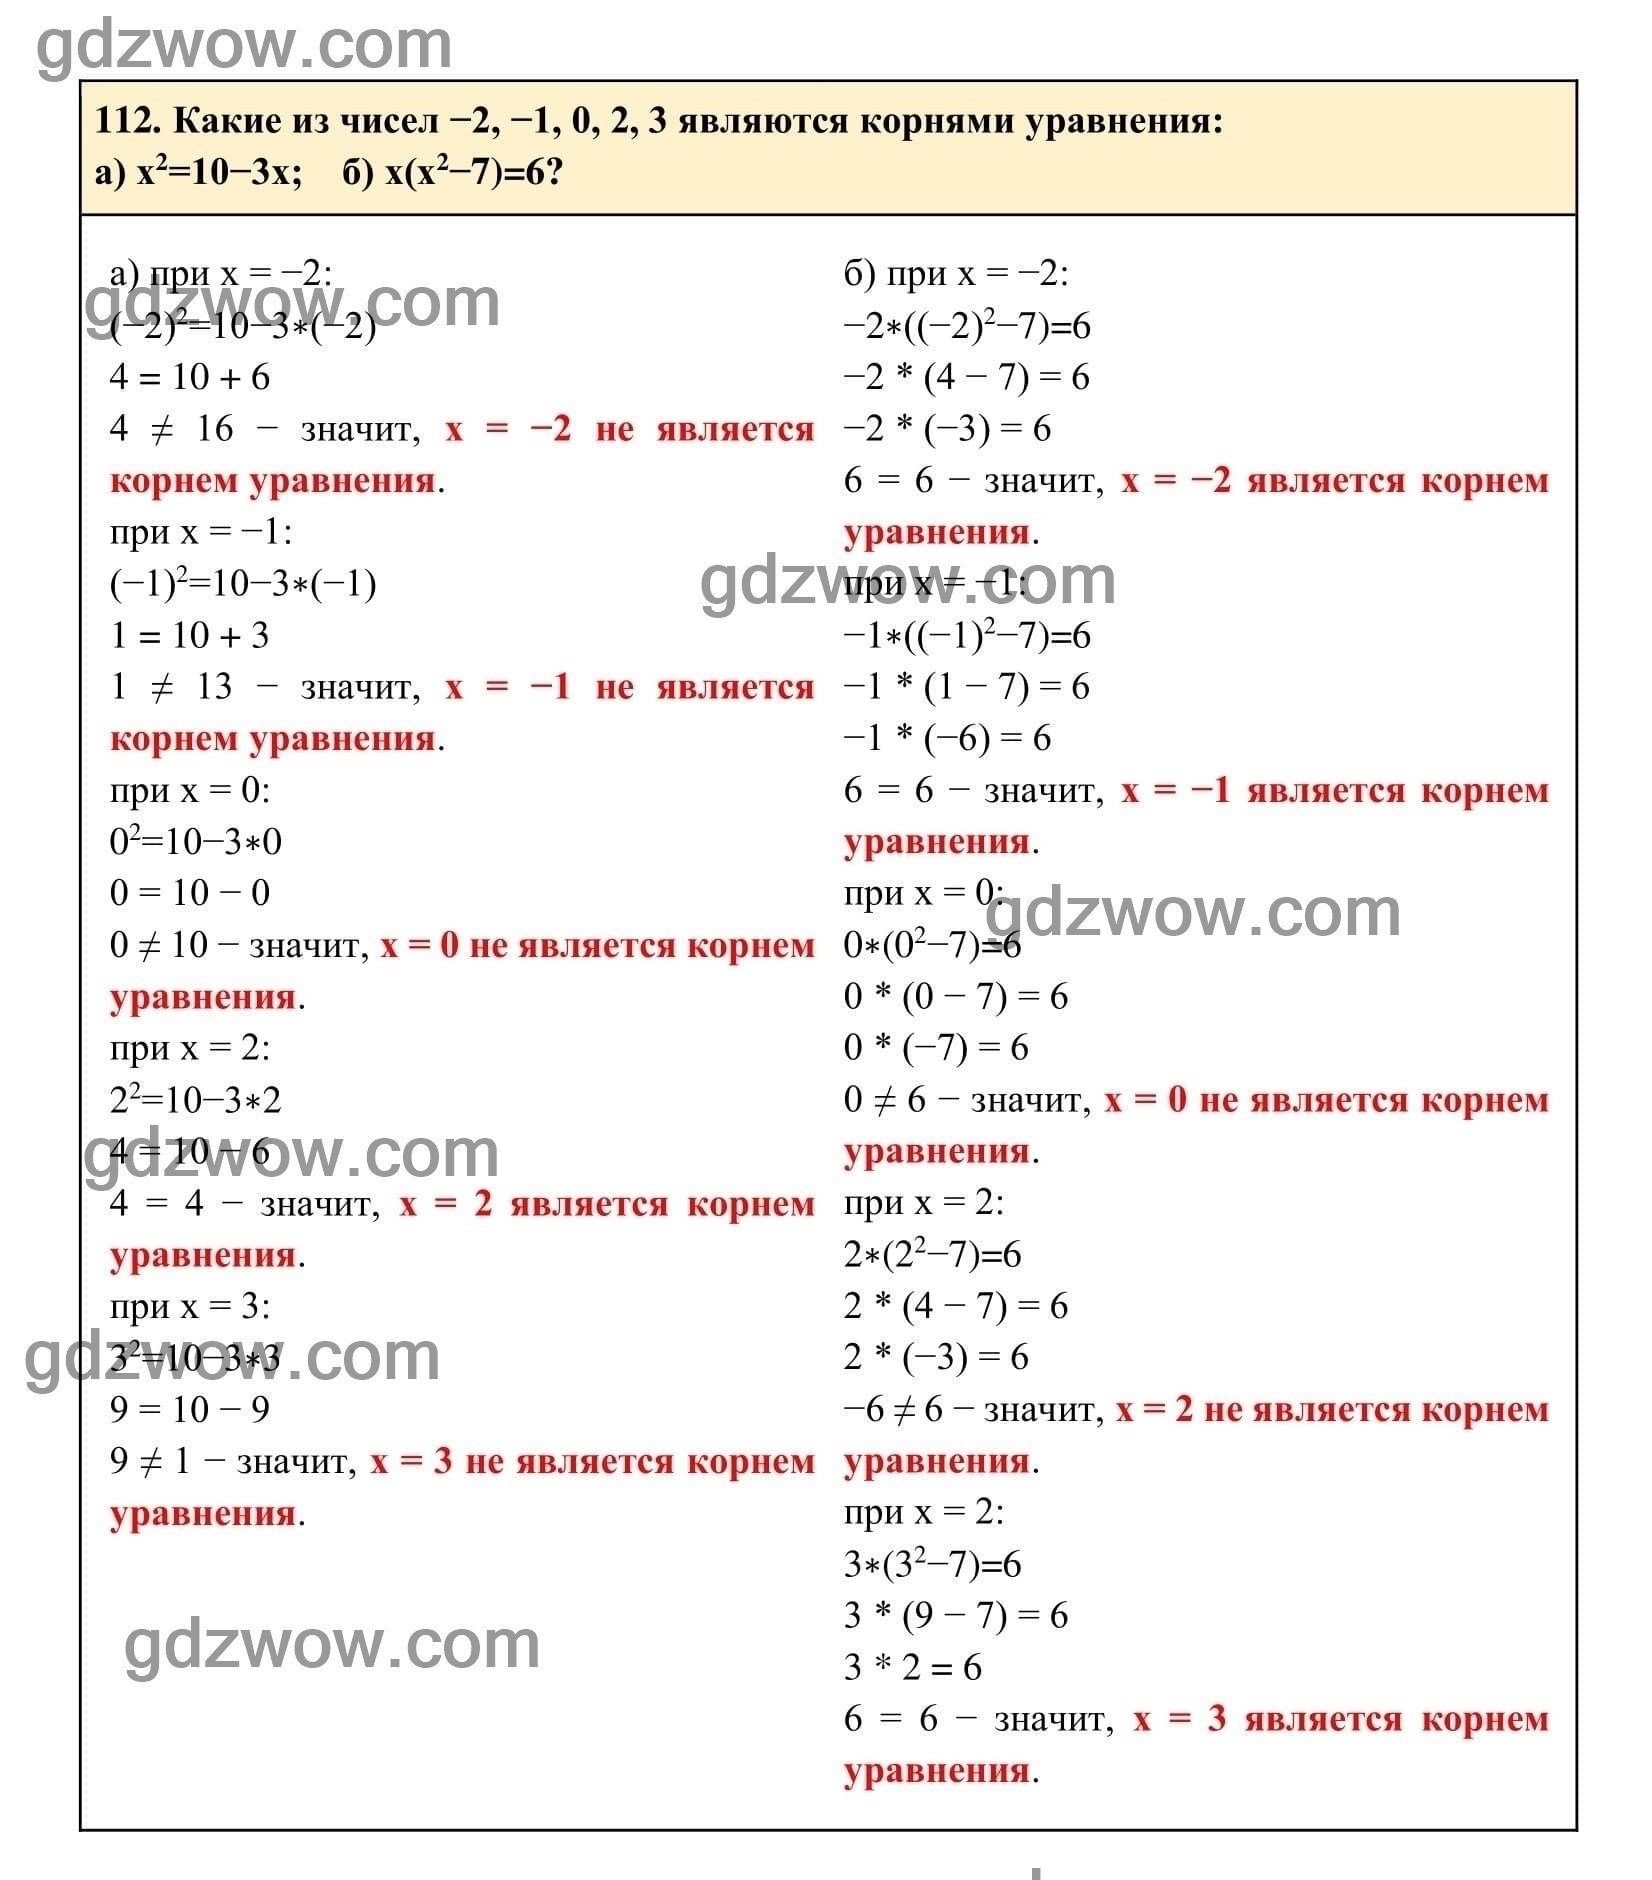 Упражнение 112 - ГДЗ по Алгебре 7 класс Учебник Макарычев (решебник) - GDZwow